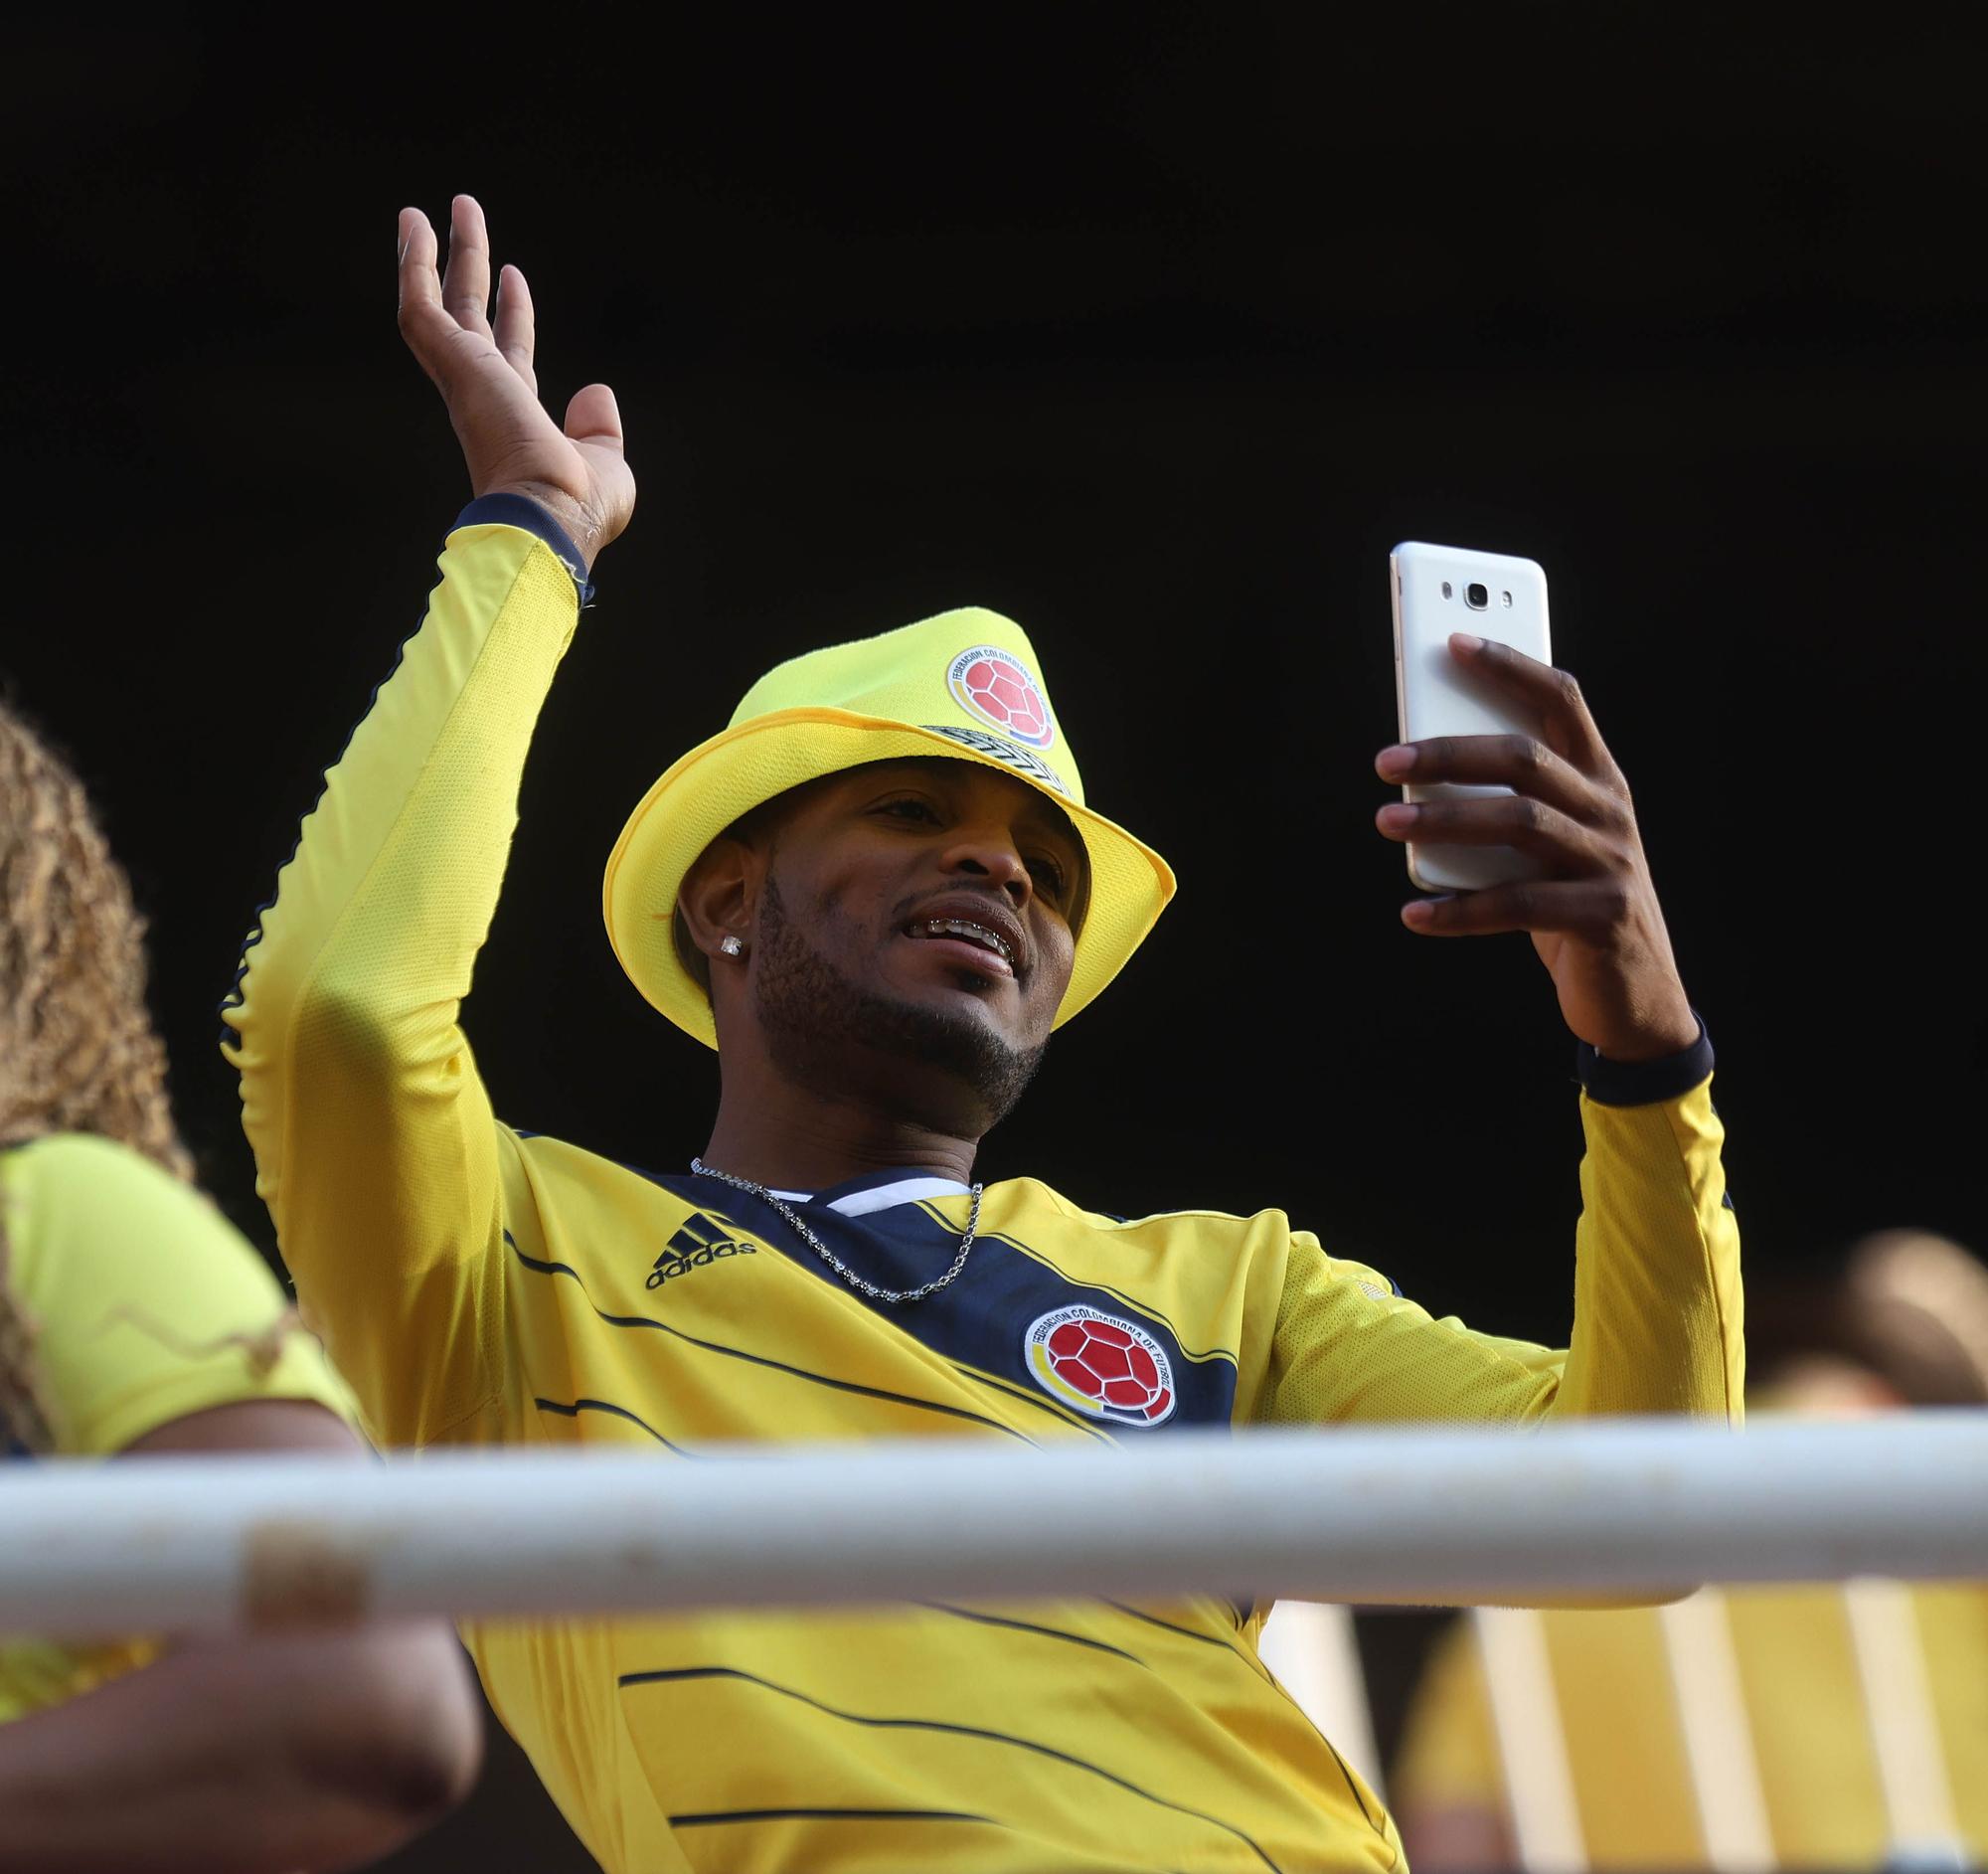 Colombia tiñó de amarillo las gradas de Mestalla